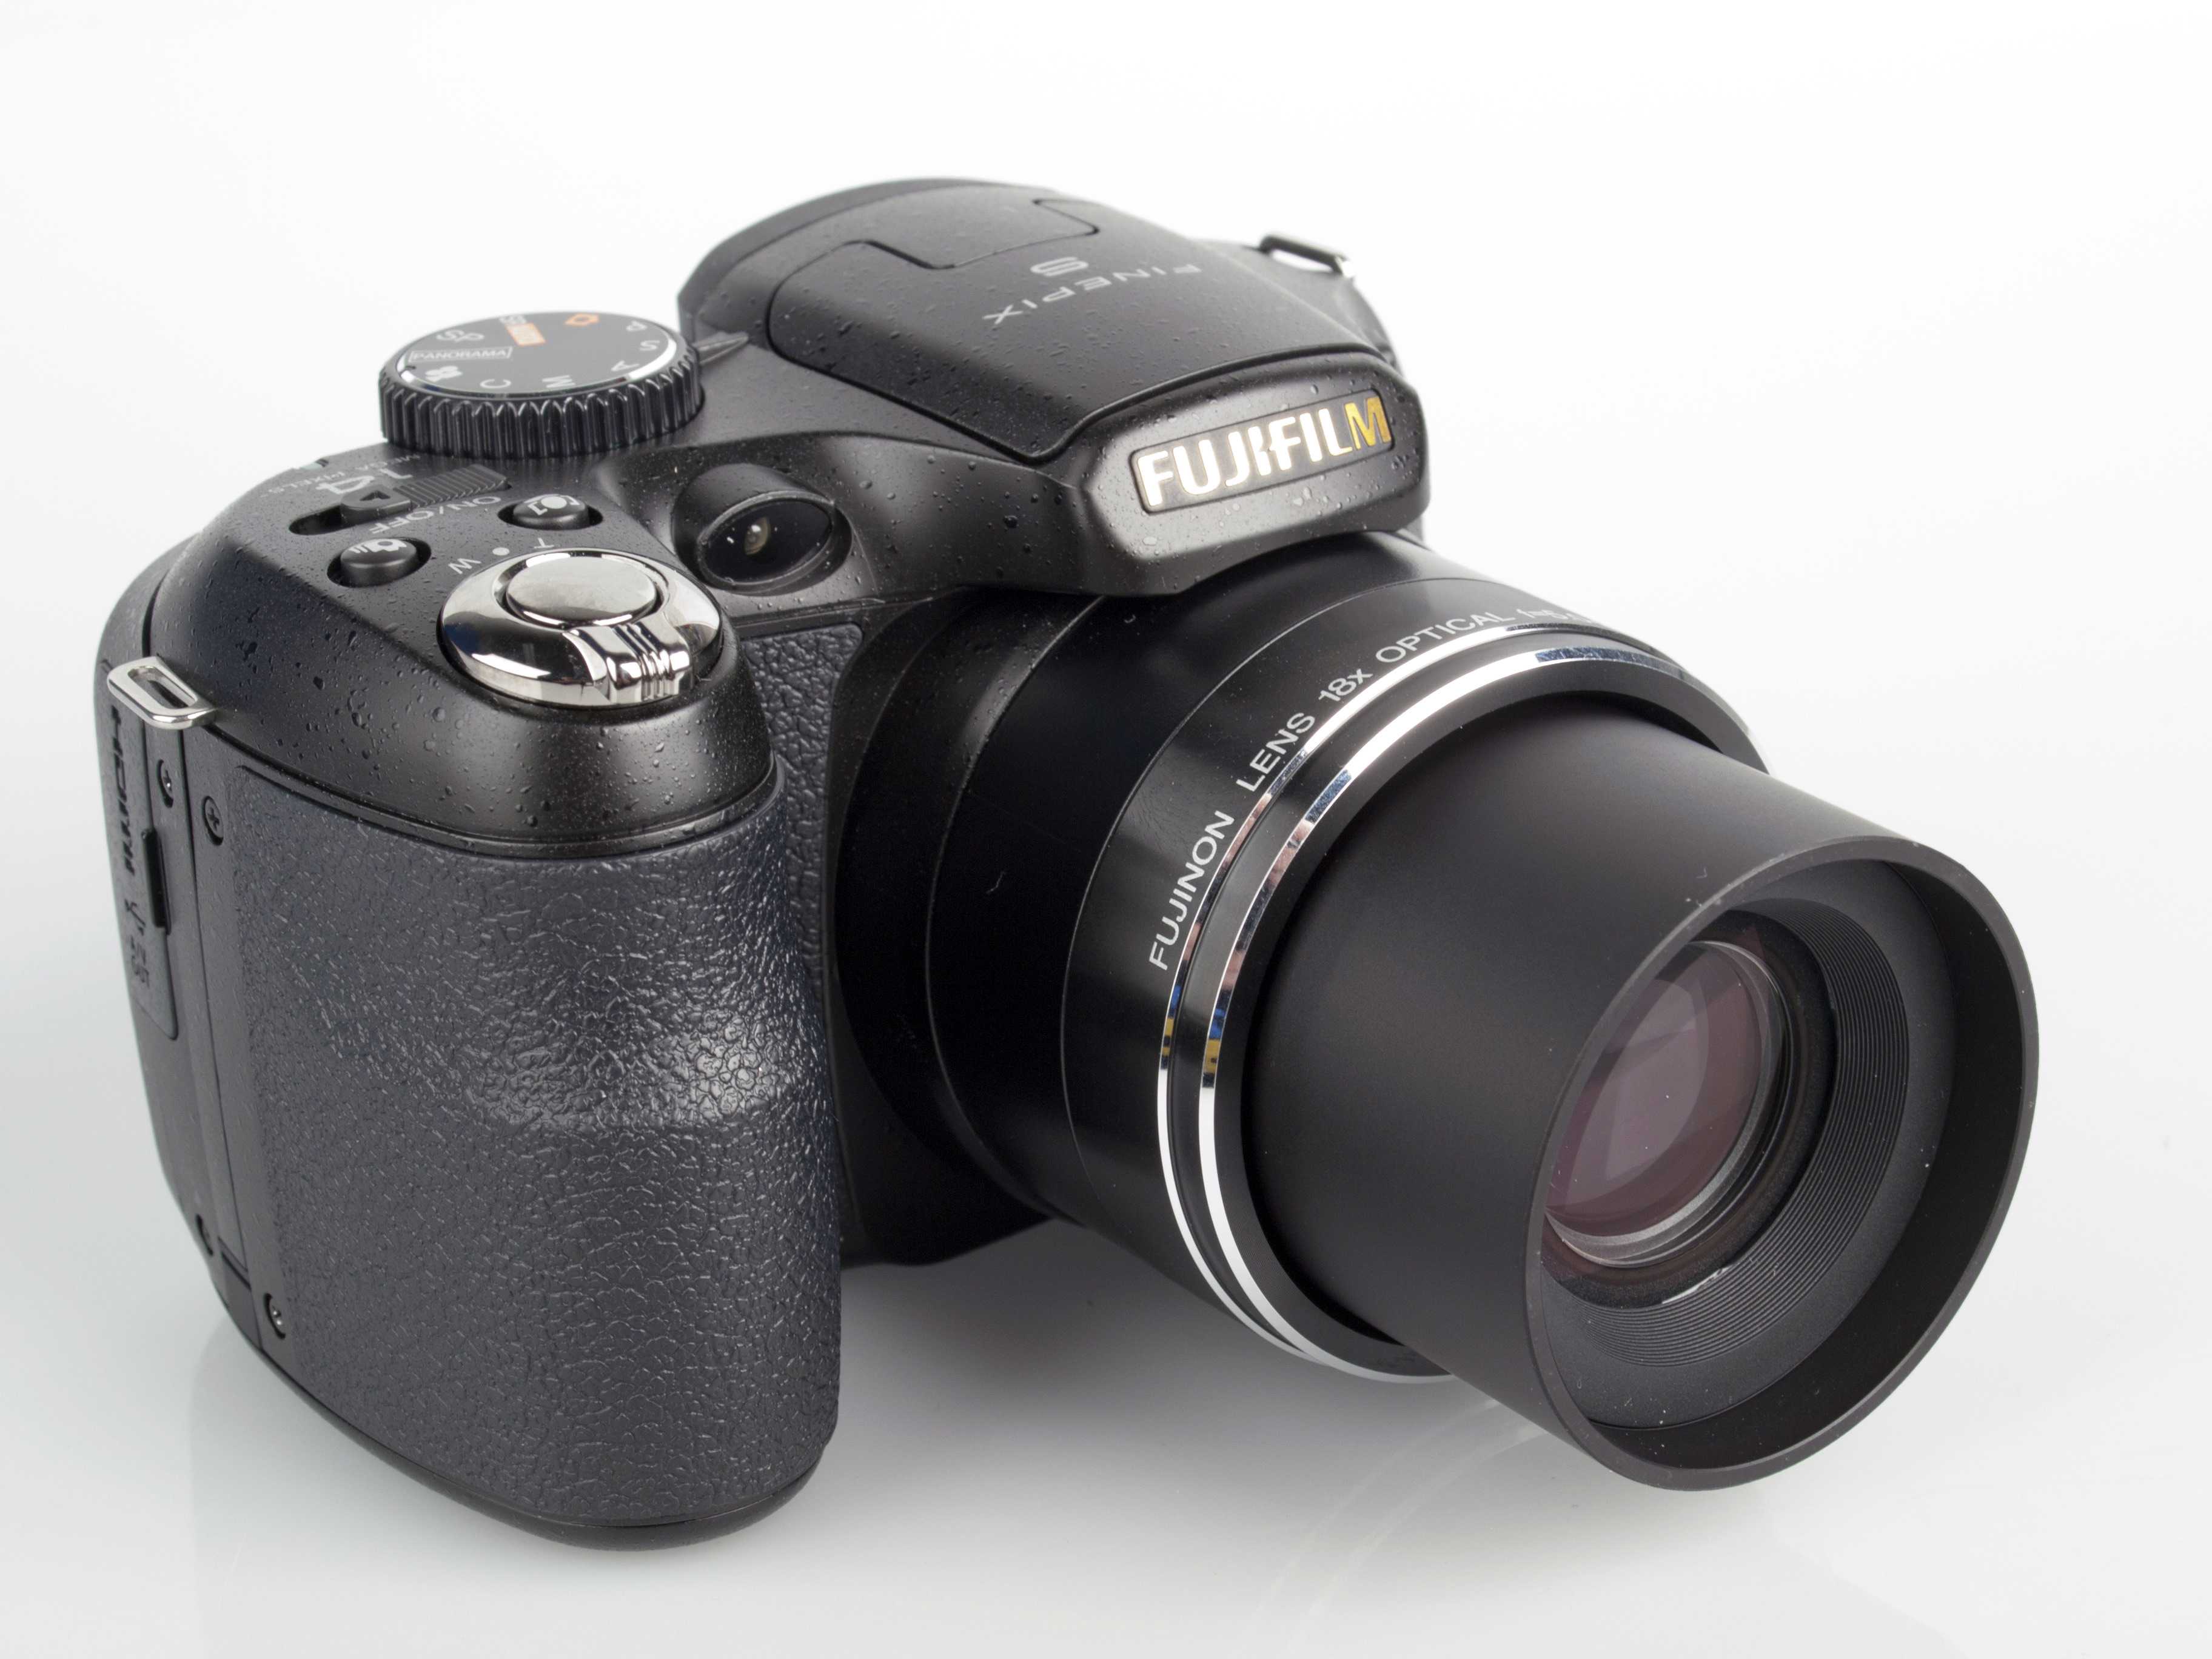 Fujifilm finepix s2800hd купить по акционной цене , отзывы и обзоры.